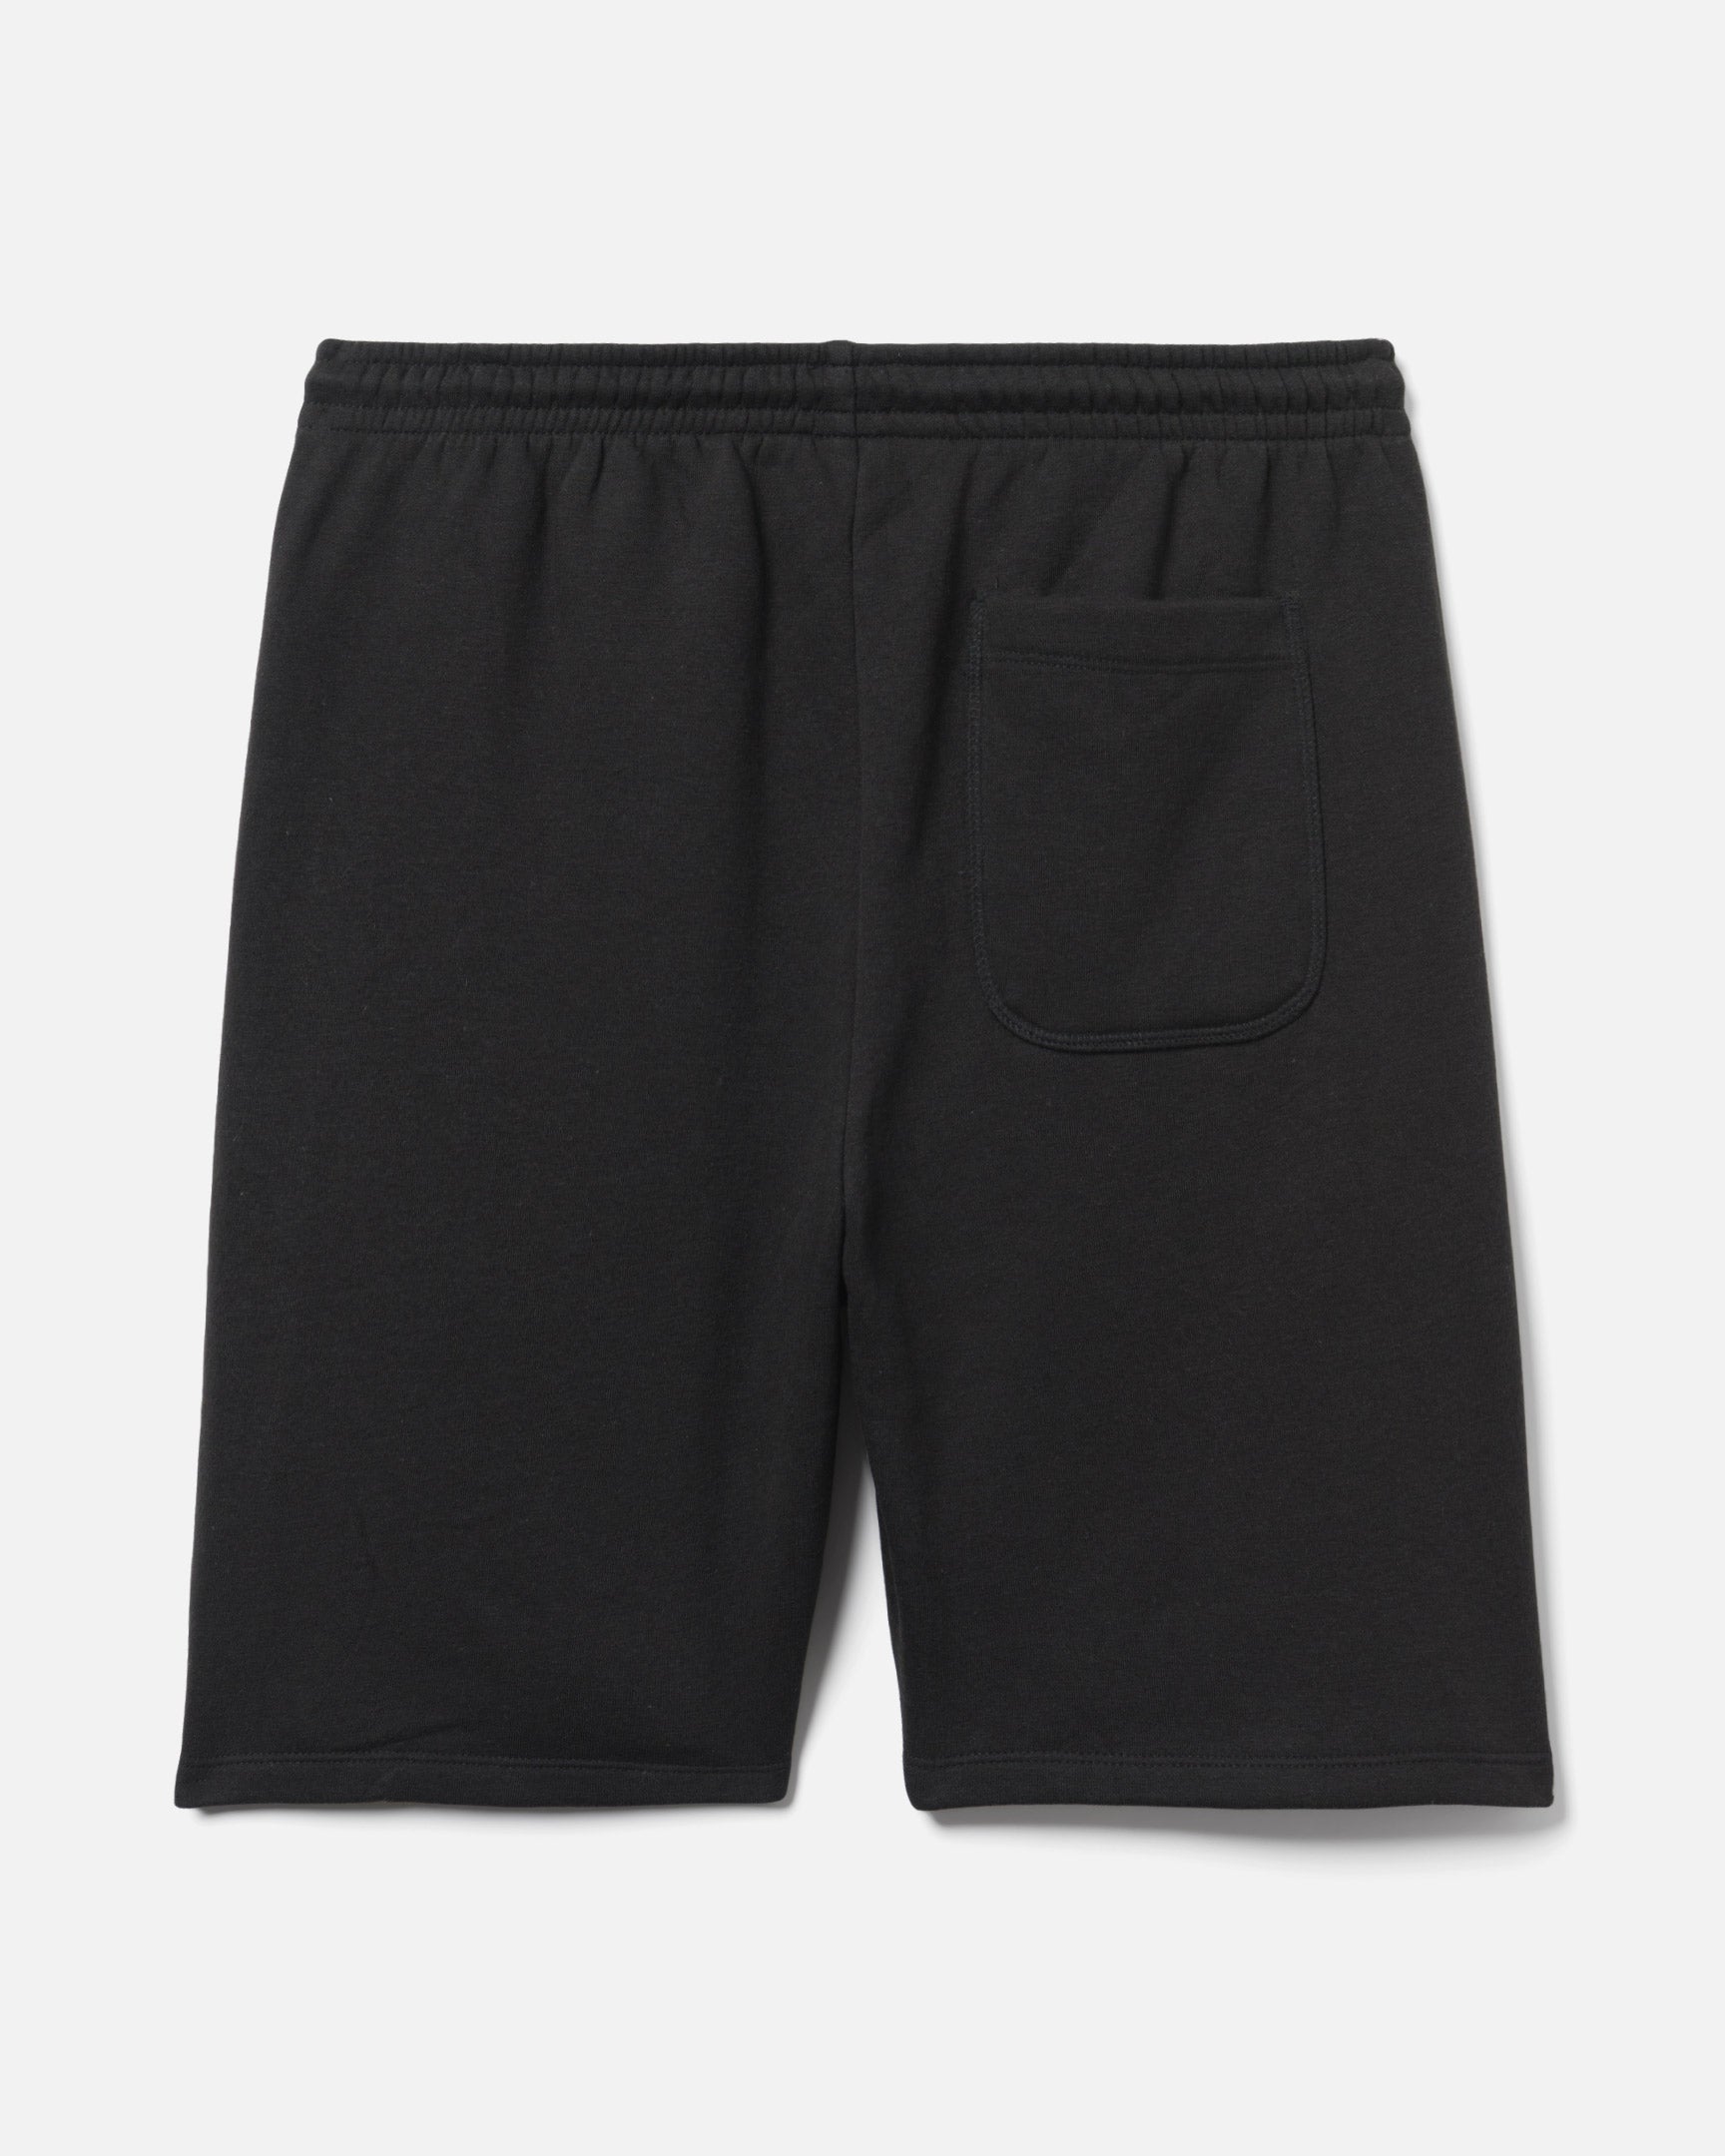 Black - Exist Knit Sport Short